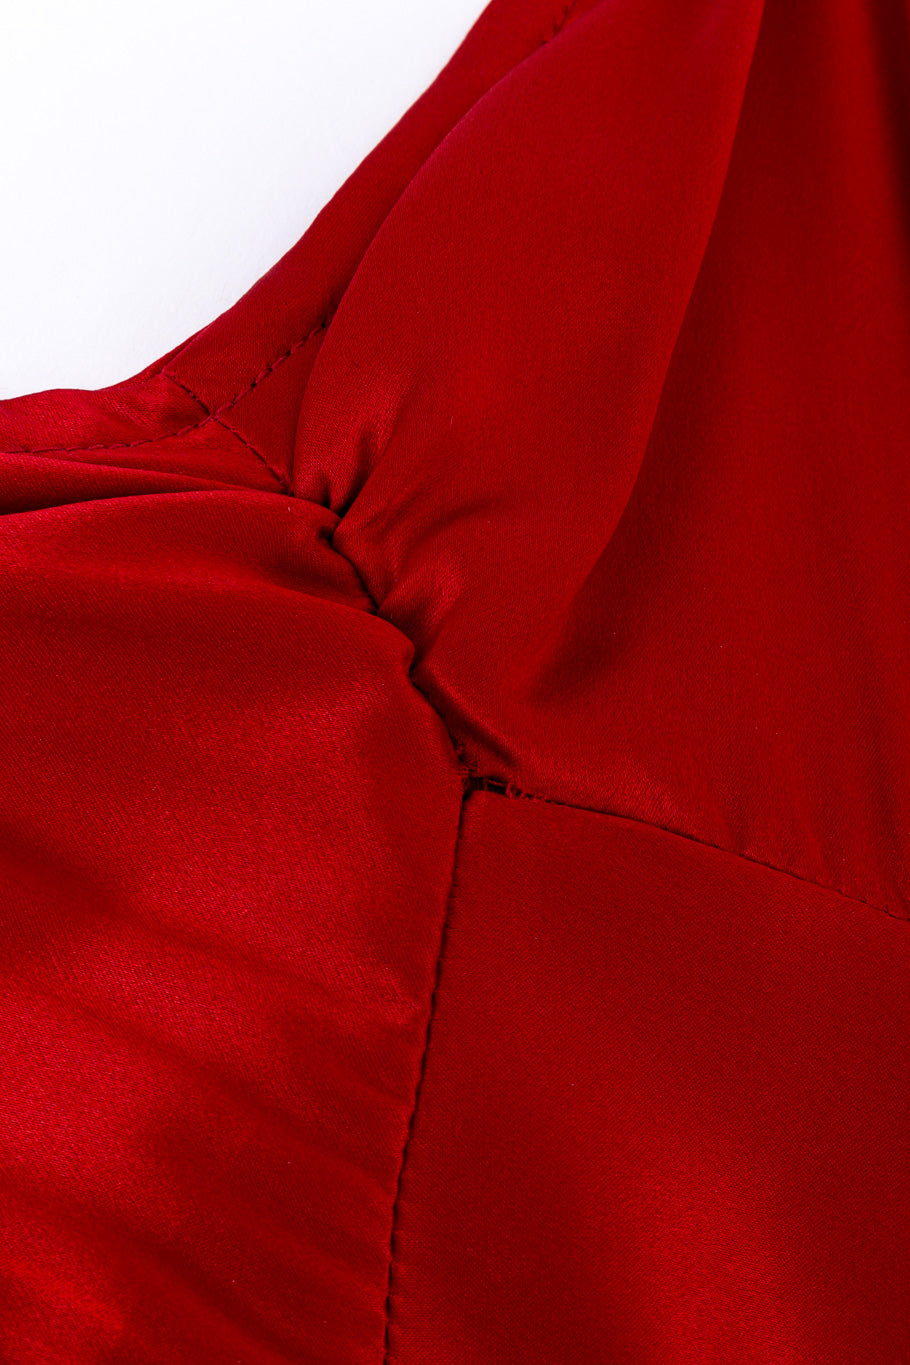 Satin slip dress by Bonnie Strauss bust ruche loose stitches @recessla